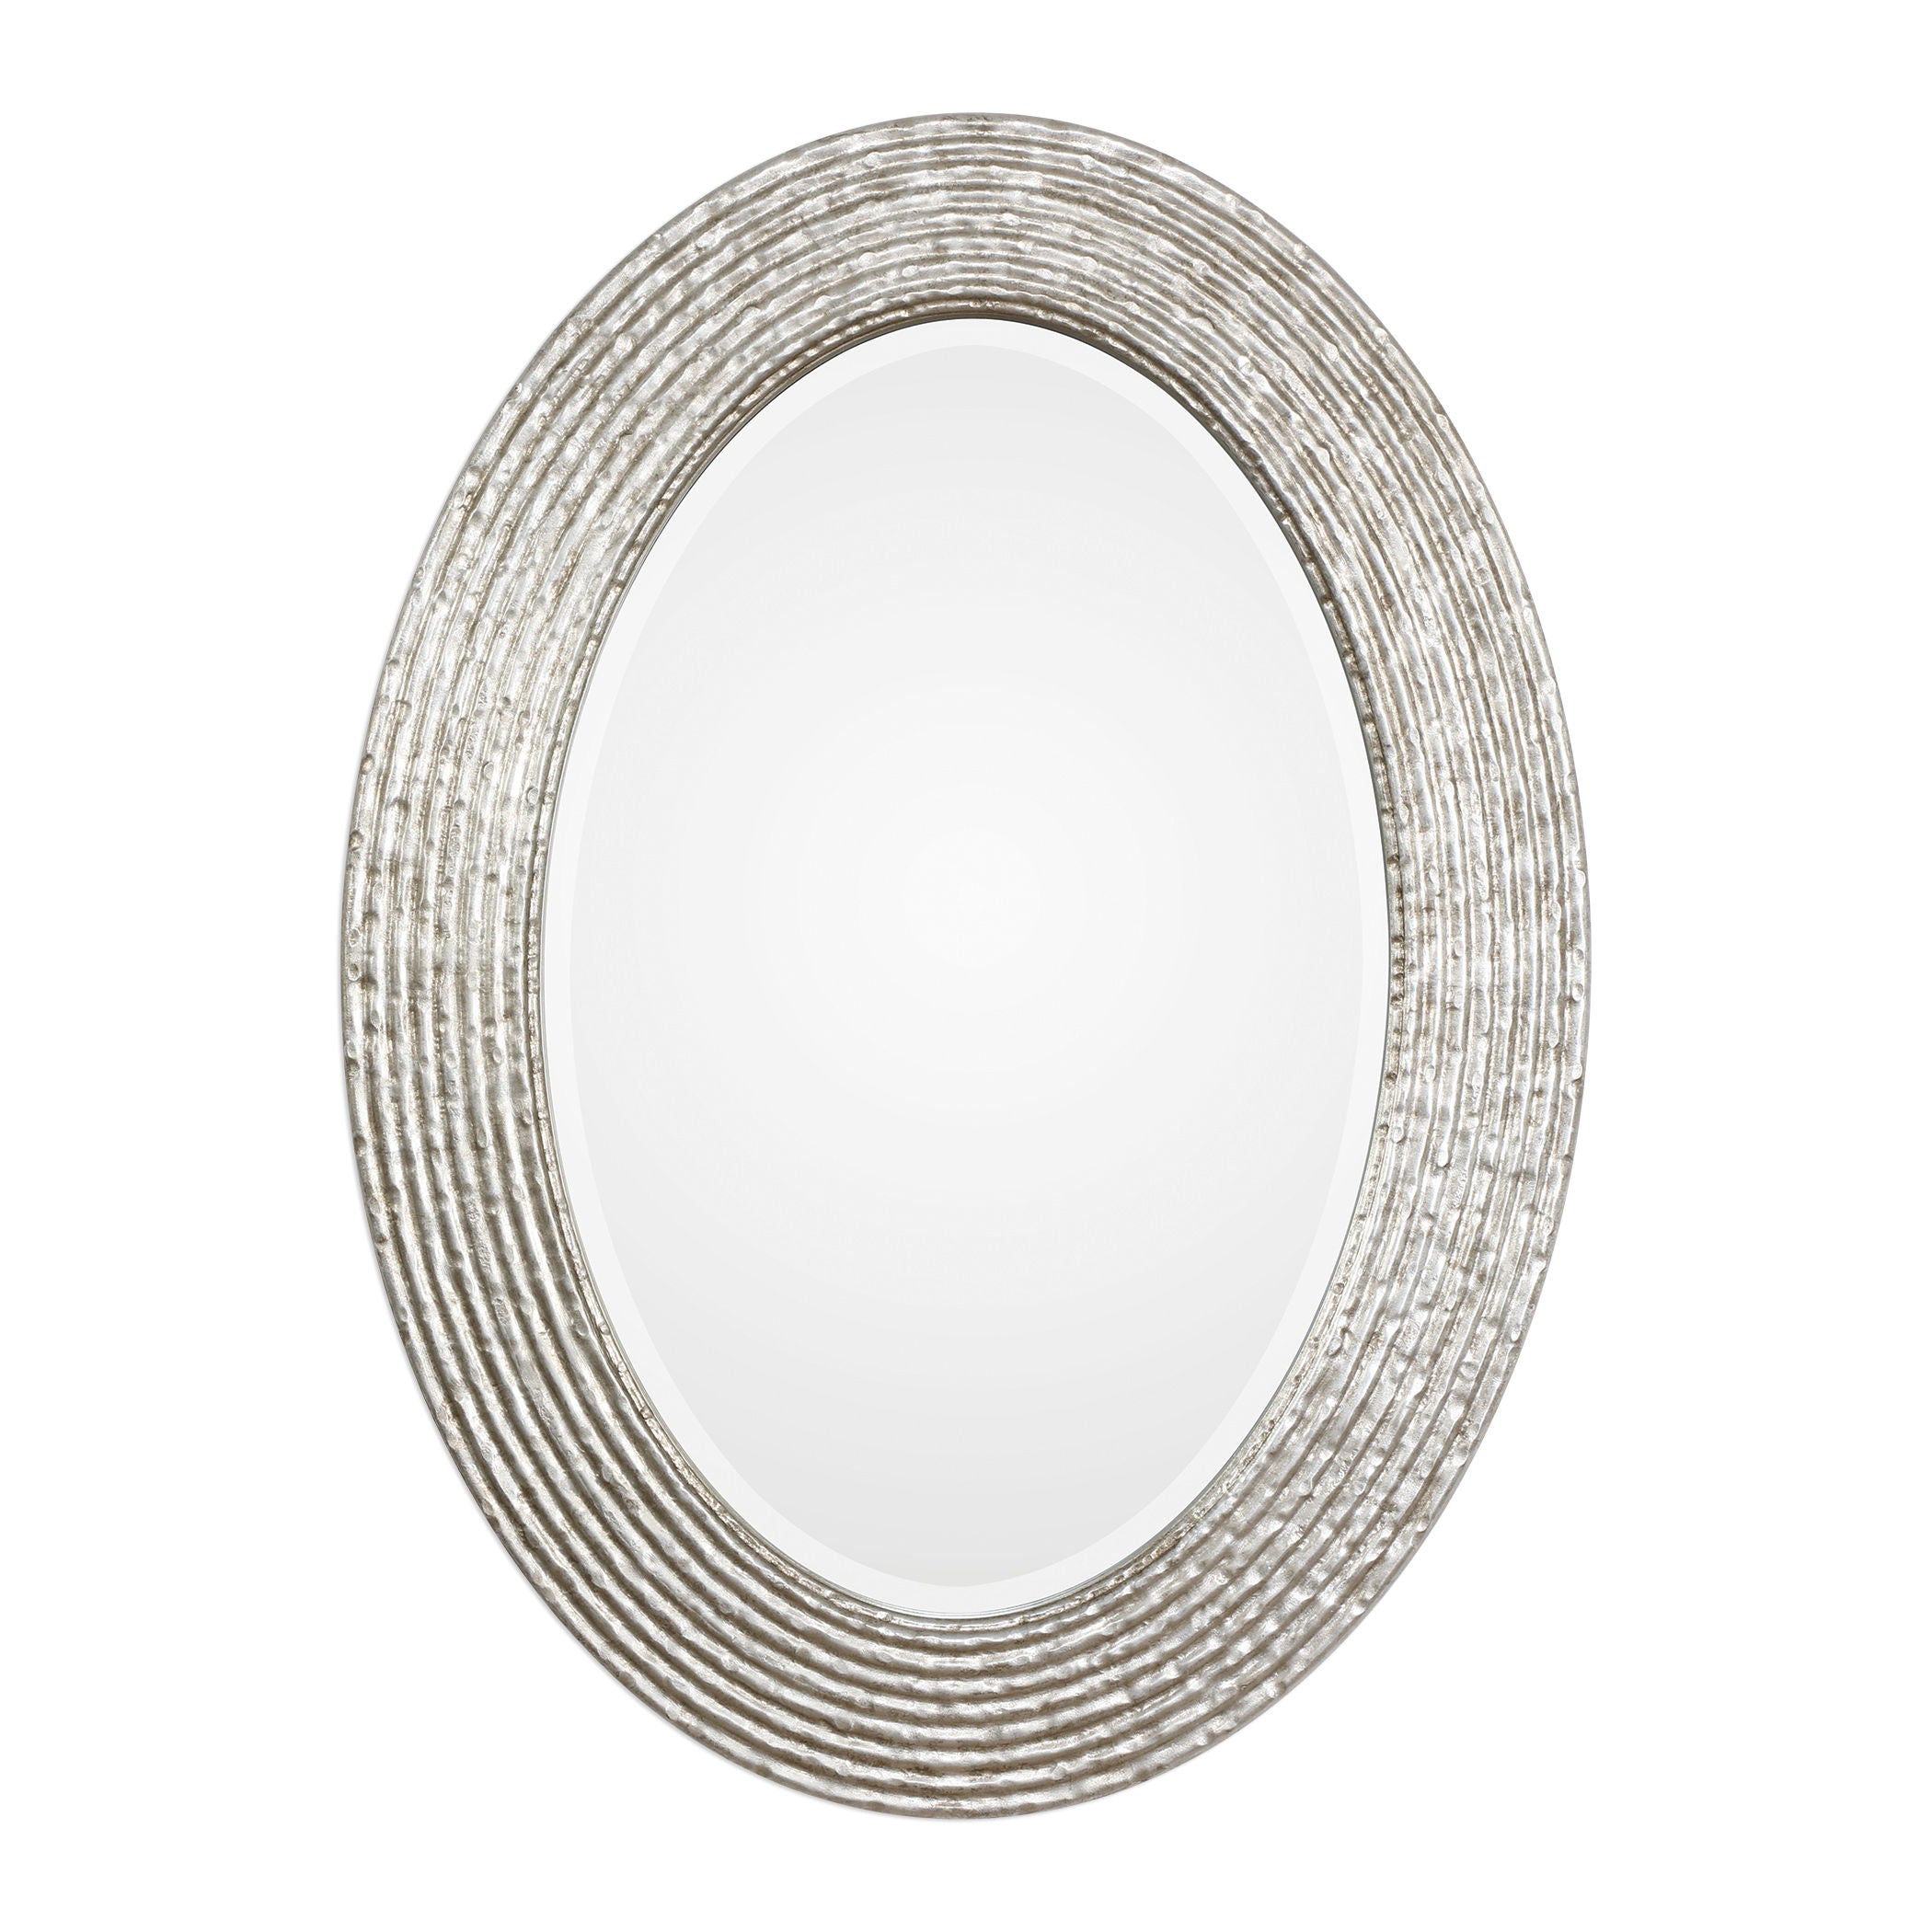 Conder - Oval Mirror - Silver